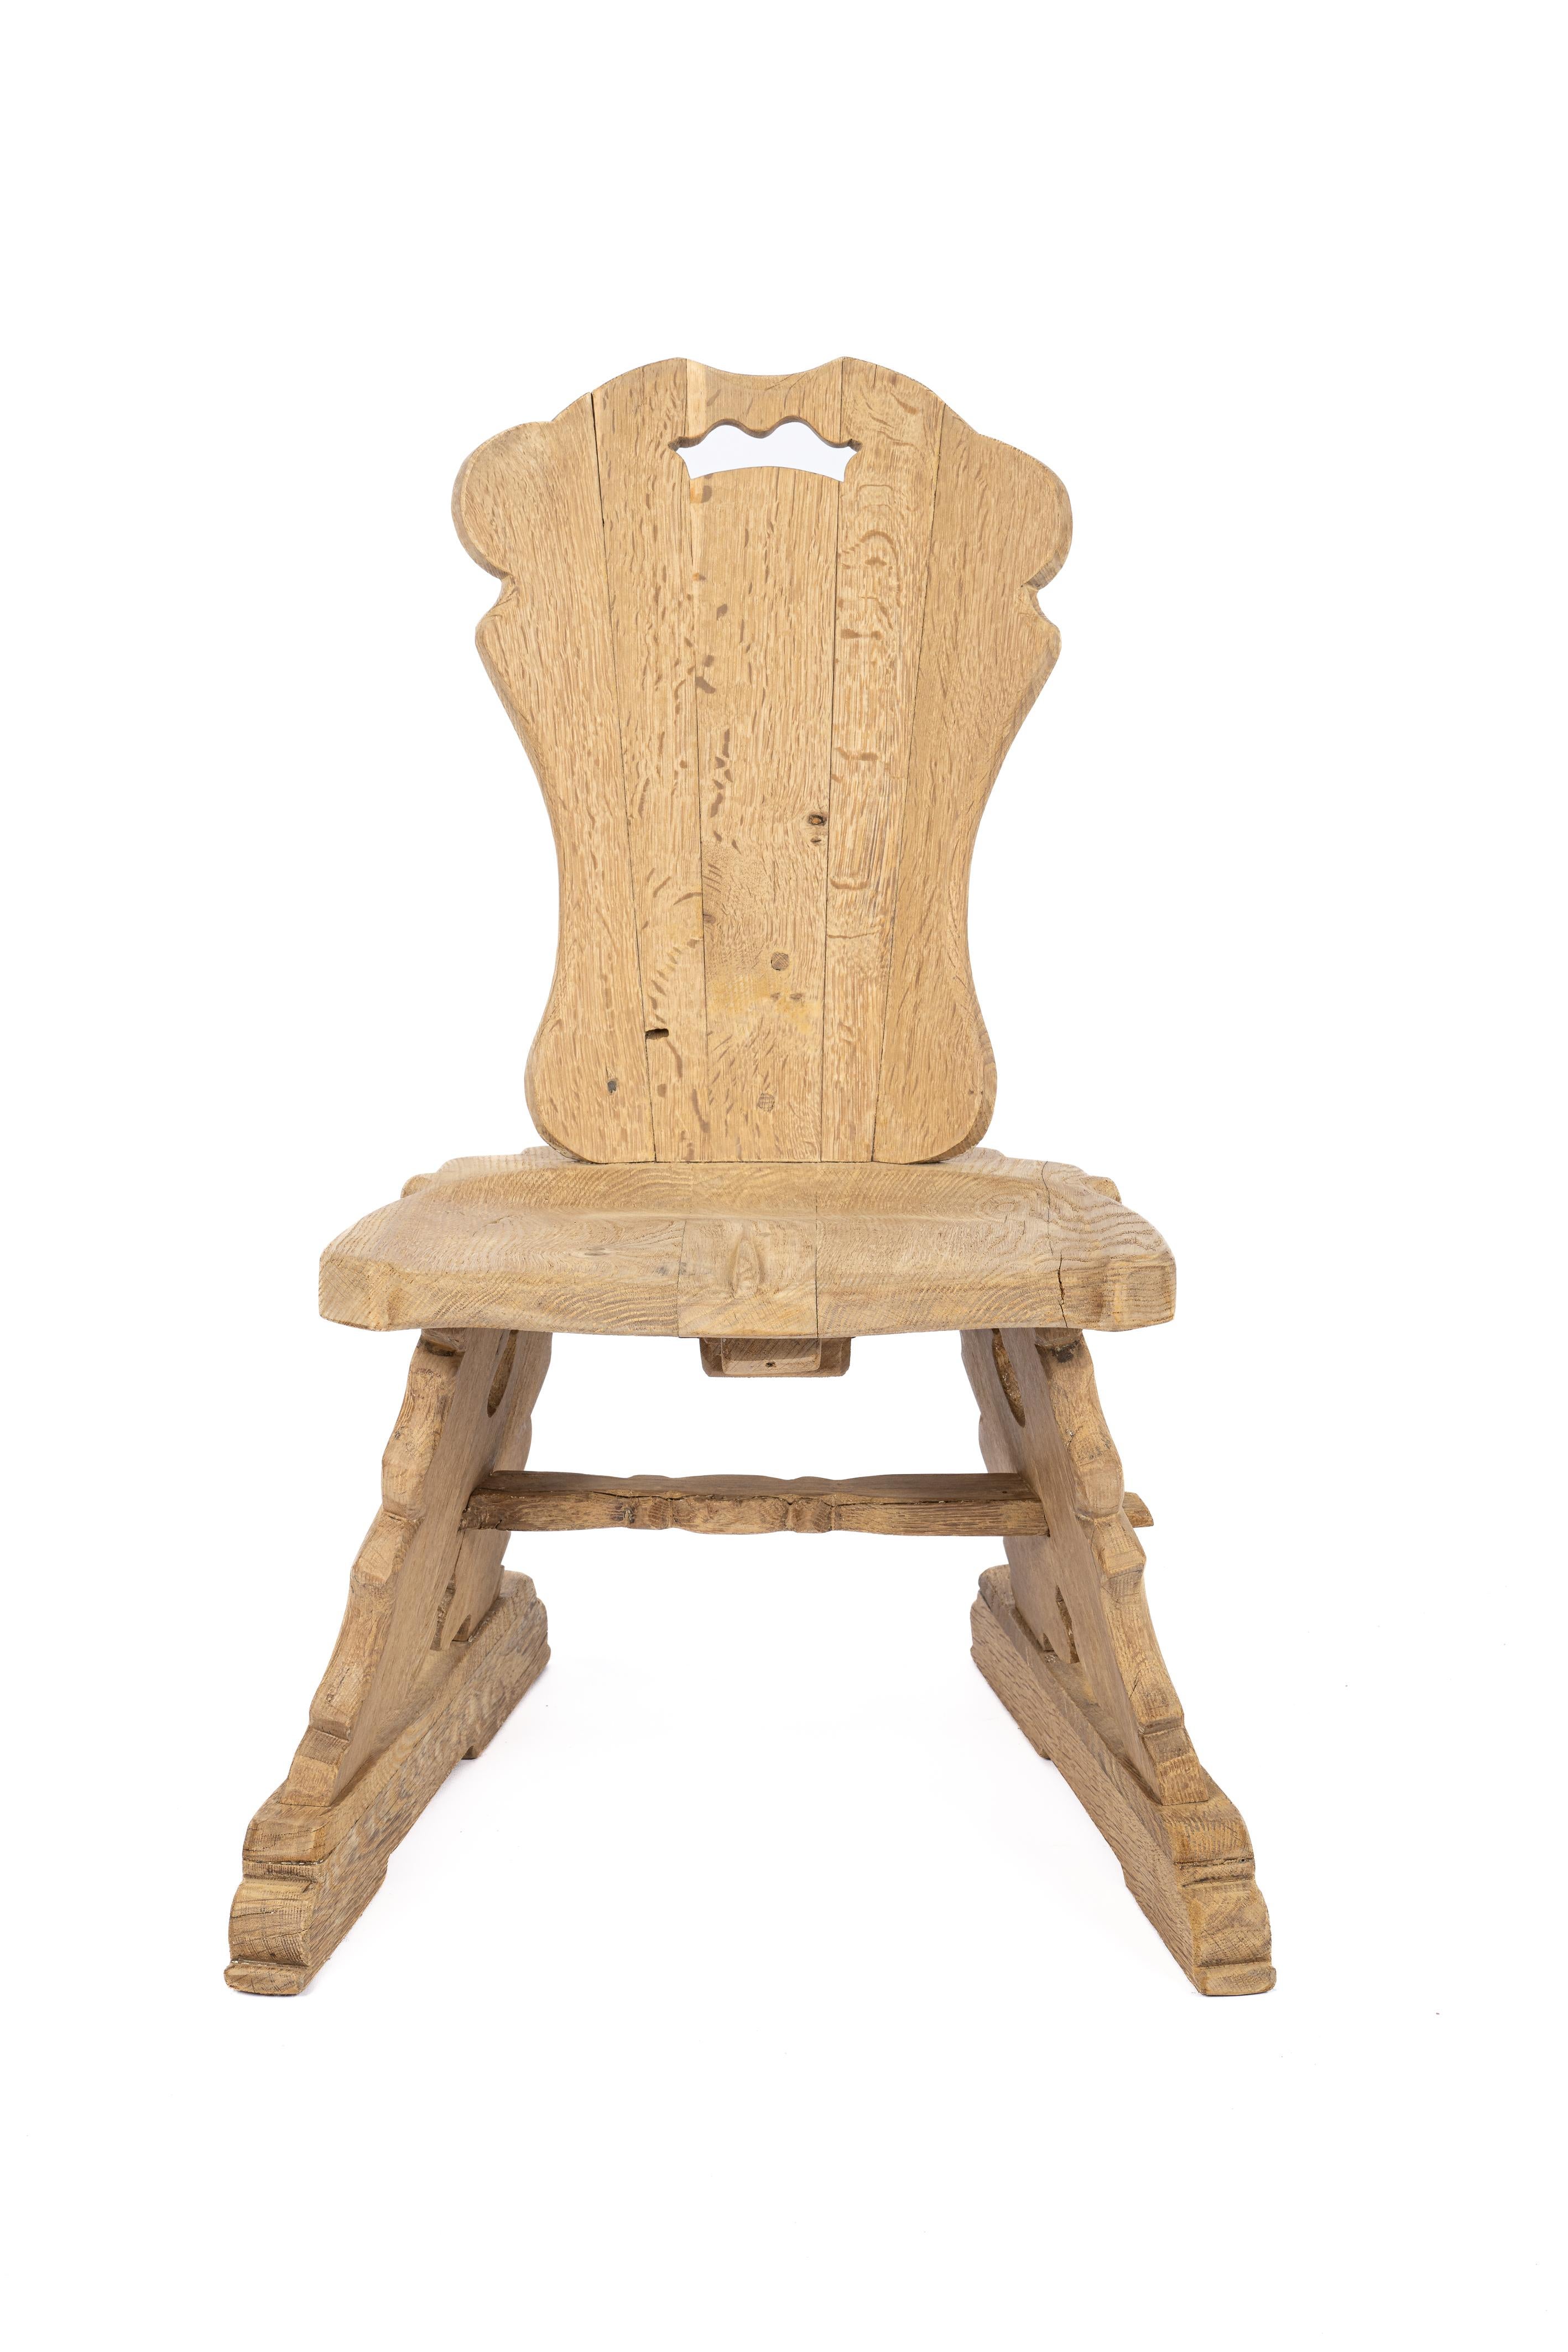 La chaise proposée ici a été fabriquée par le maître fabricant de meubles Piet Rombouts vers 1950. La chaise a été fabriquée à partir du meilleur chêne d'été scié sur quartier disponible. Le bois est très stable et présente une belle veinure